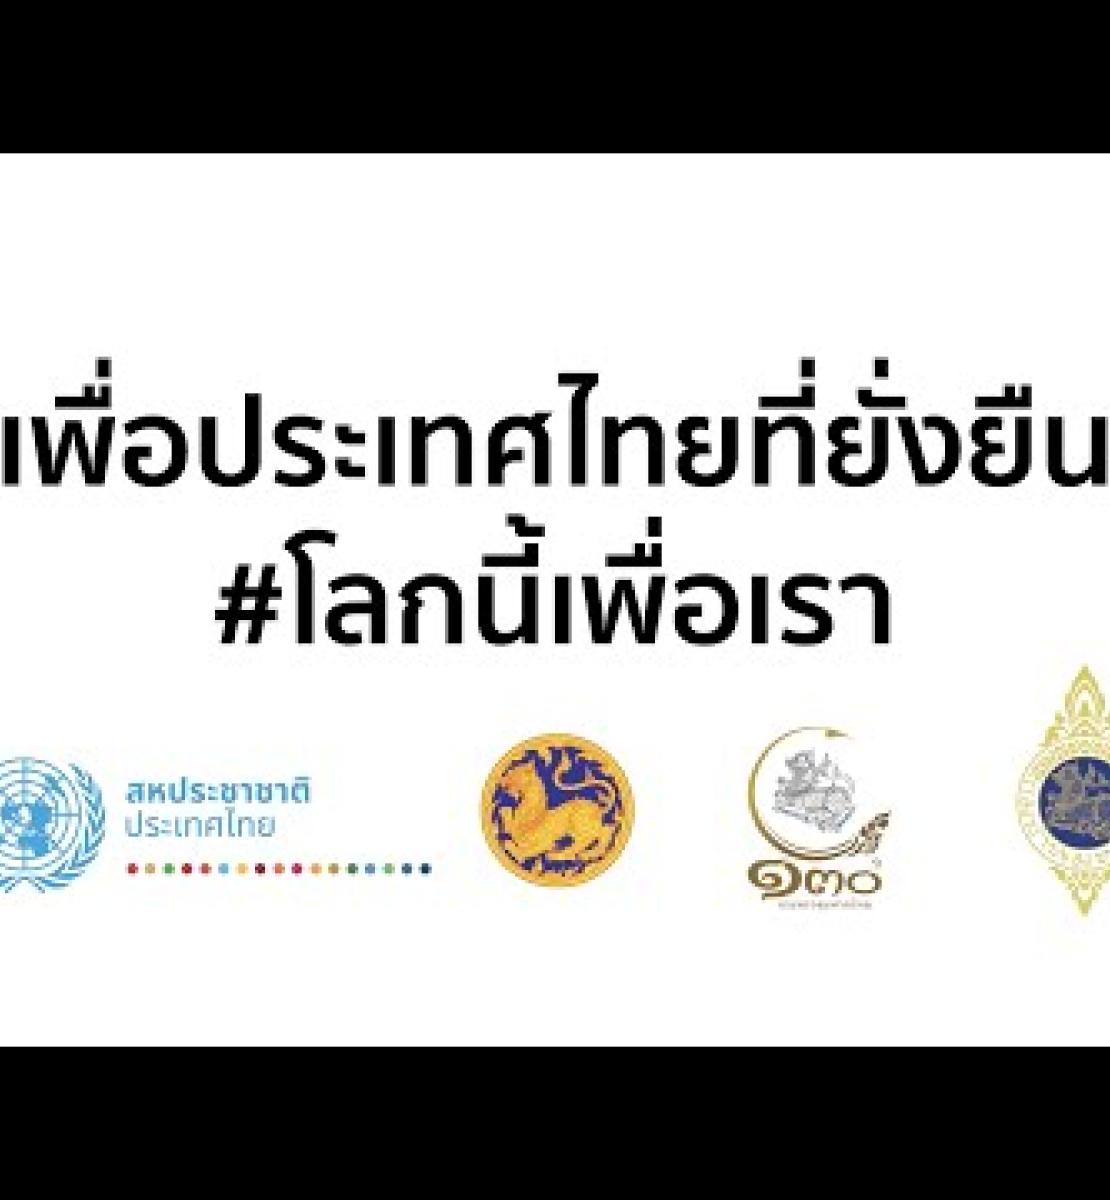 泰国76府府尹共同签署《泰国可持续发展承诺声明》